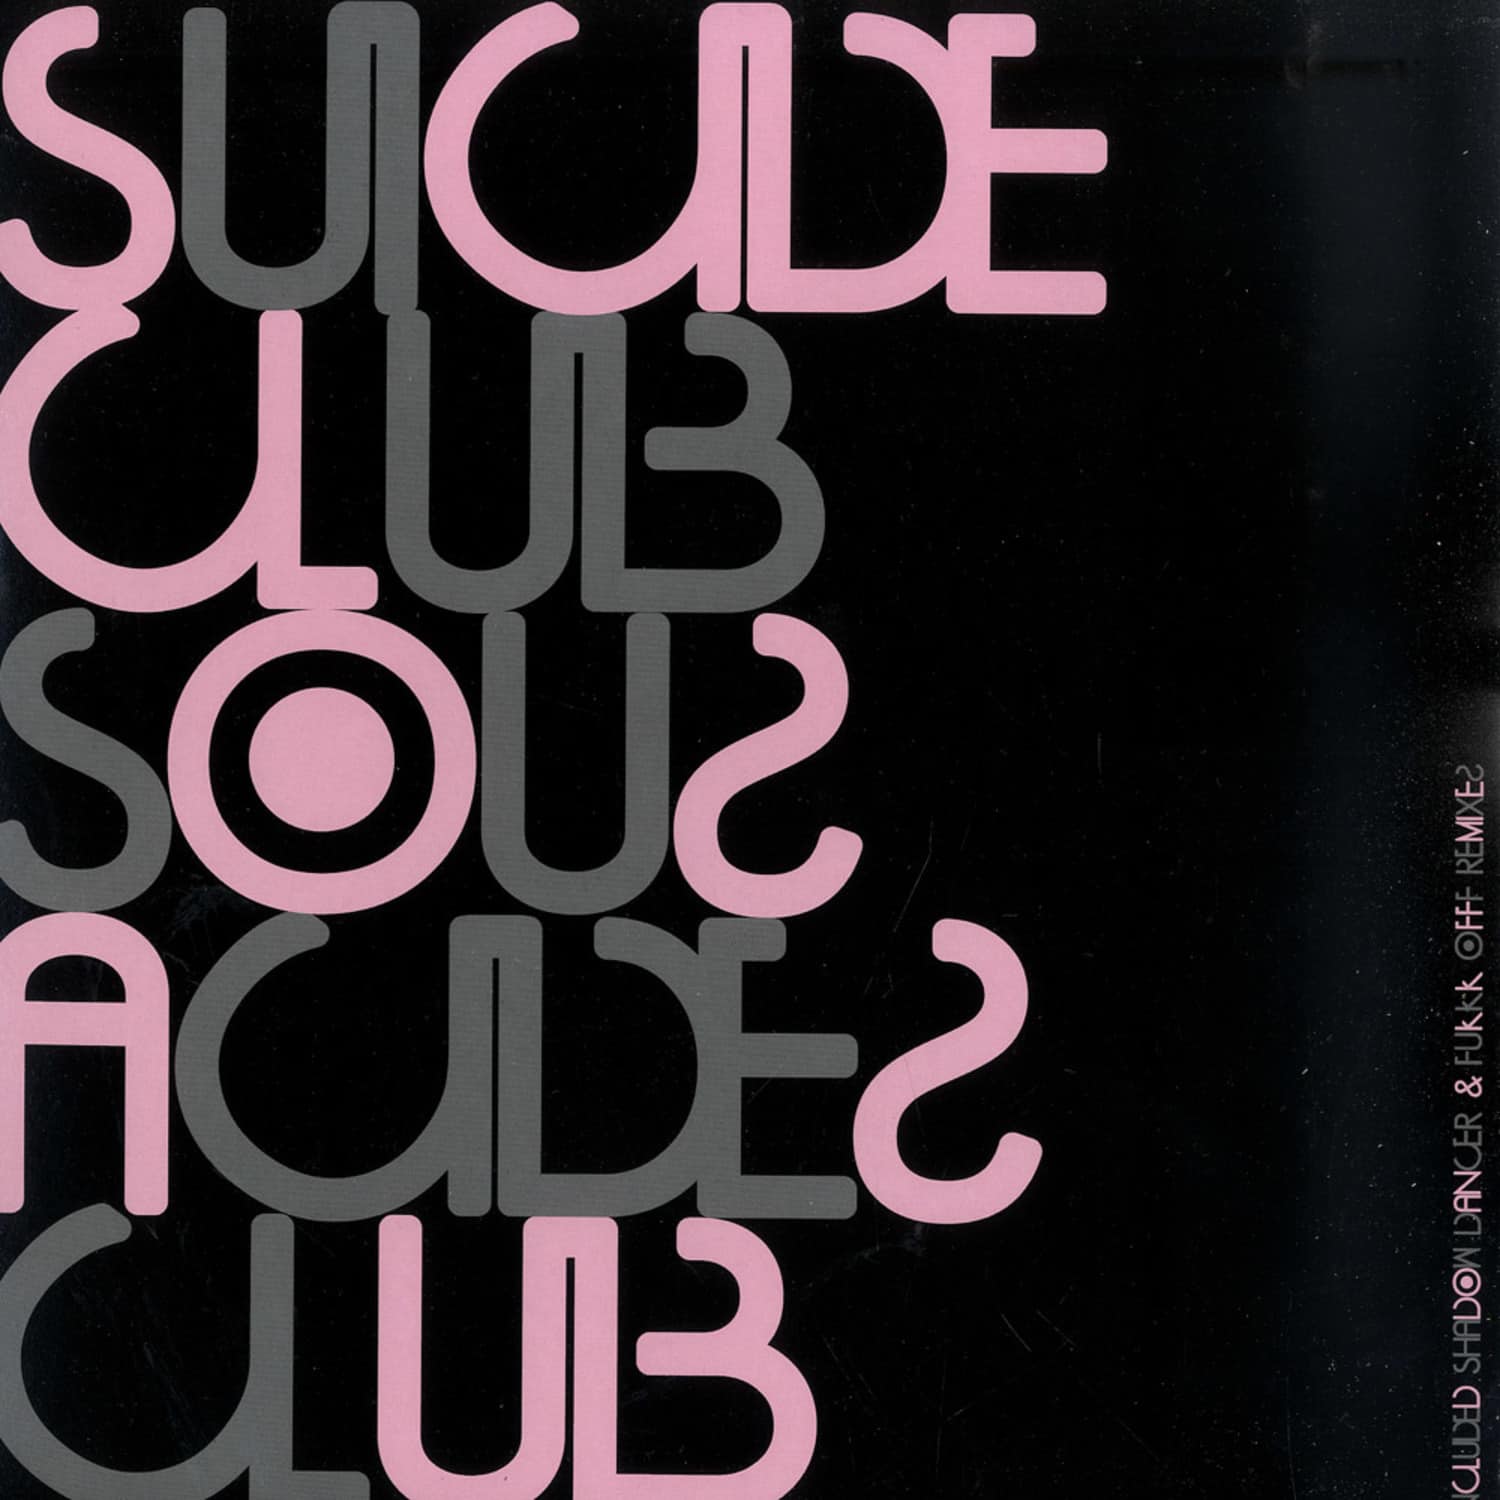 Suicide Club - SOUS ACIDES CLUB